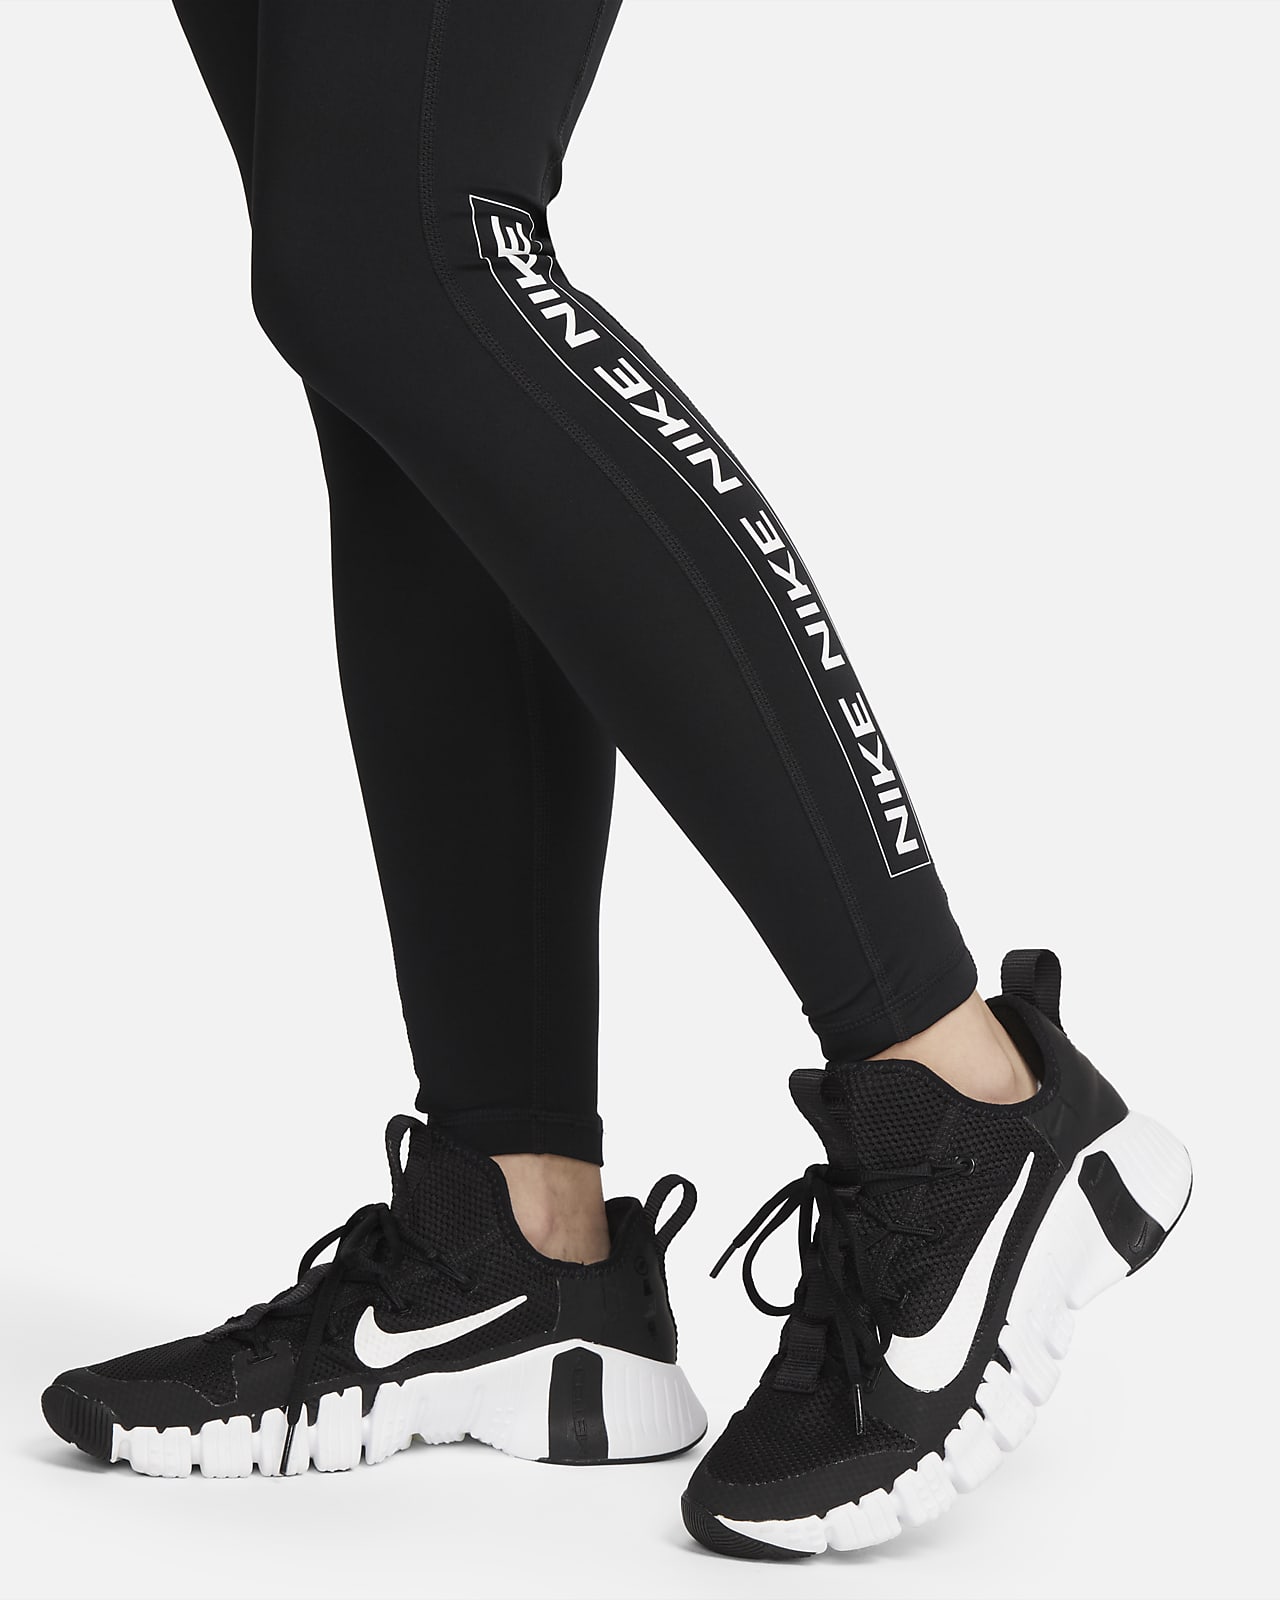 Legging long à taille haute Nike Air pour femme